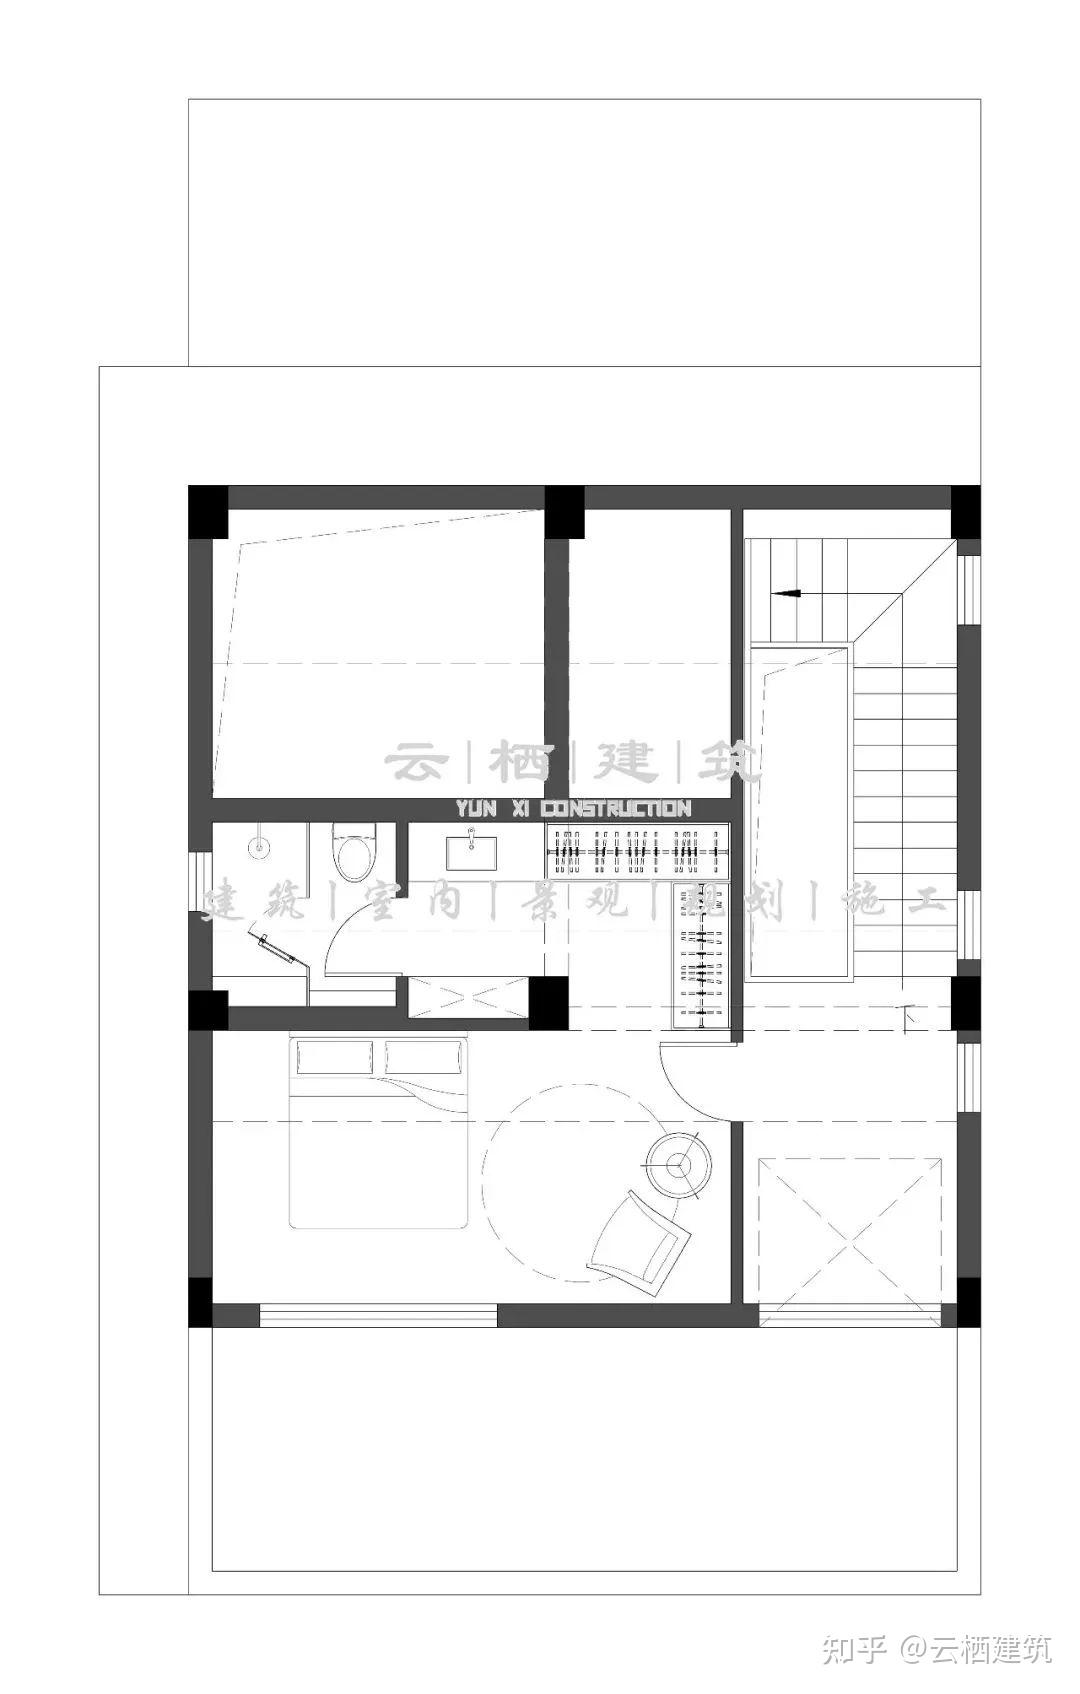 三居室欧式风格私人住宅装修施工图+效果图-住宅装修-筑龙室内设计论坛